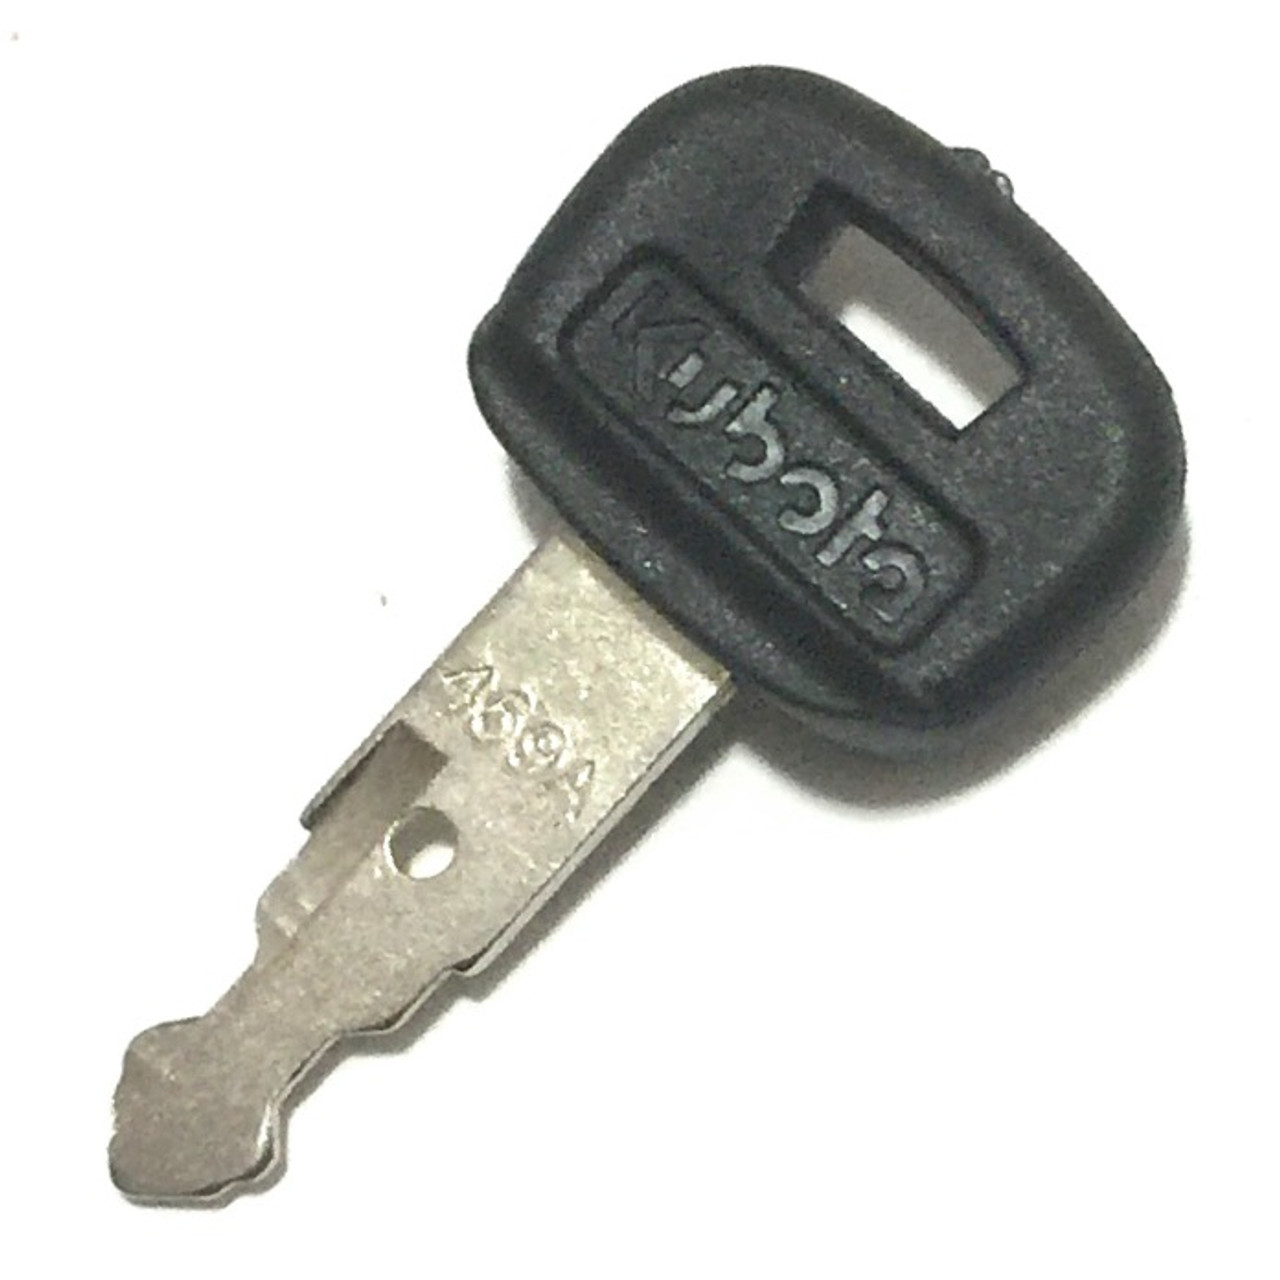 kubota key